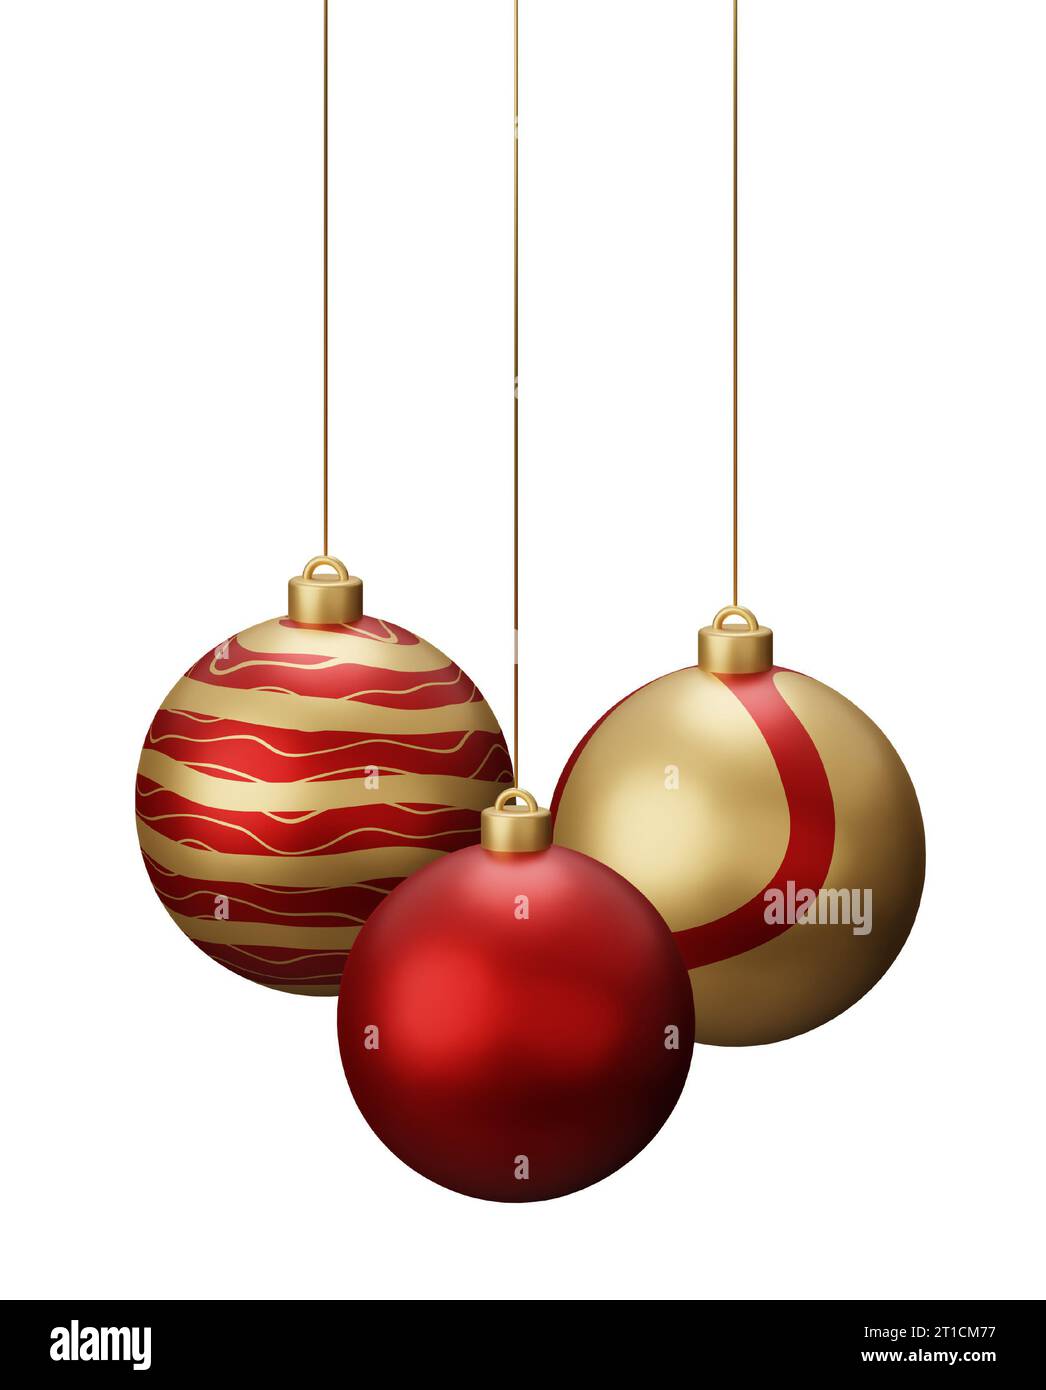 Rote und goldene Weihnachtskugeln. Abbildung des 3D-Renderings isoliert auf  weißem Hintergrund Stockfotografie - Alamy